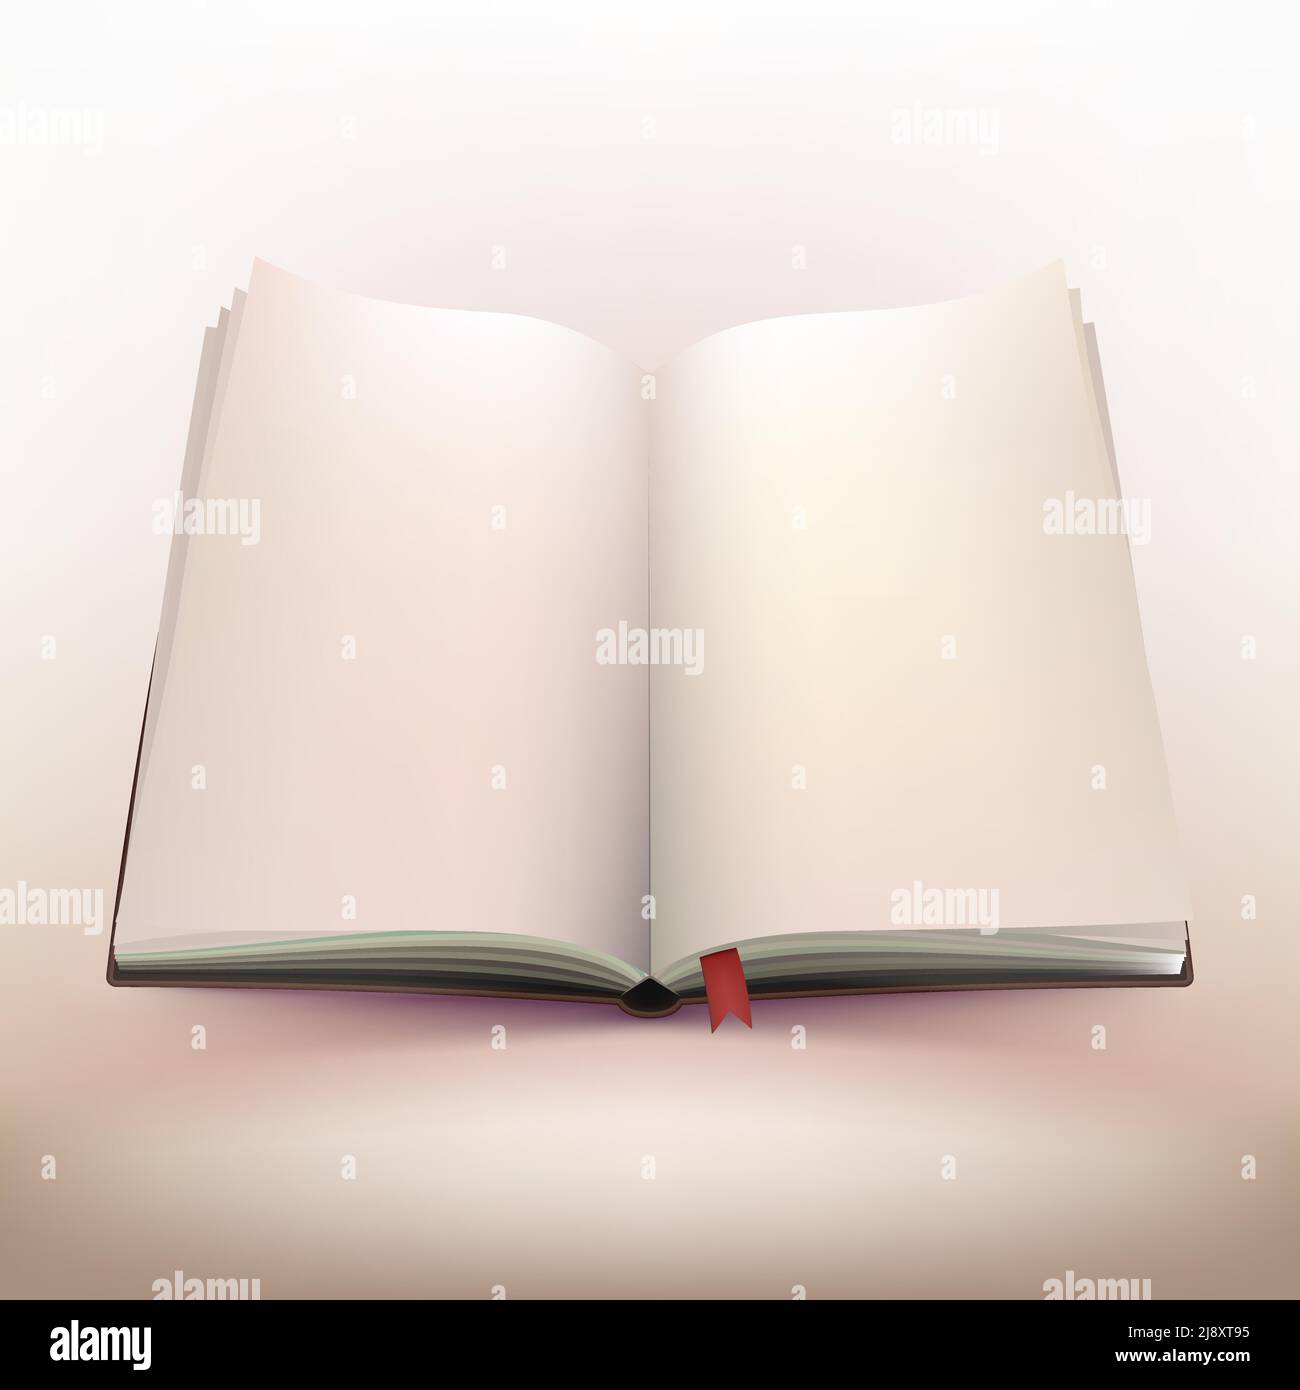 Design 3d del notebook con copertina rigida vuota e aperta con segnalibro rosso attivo immagine vettoriale di sfondo con luce calda Illustrazione Vettoriale